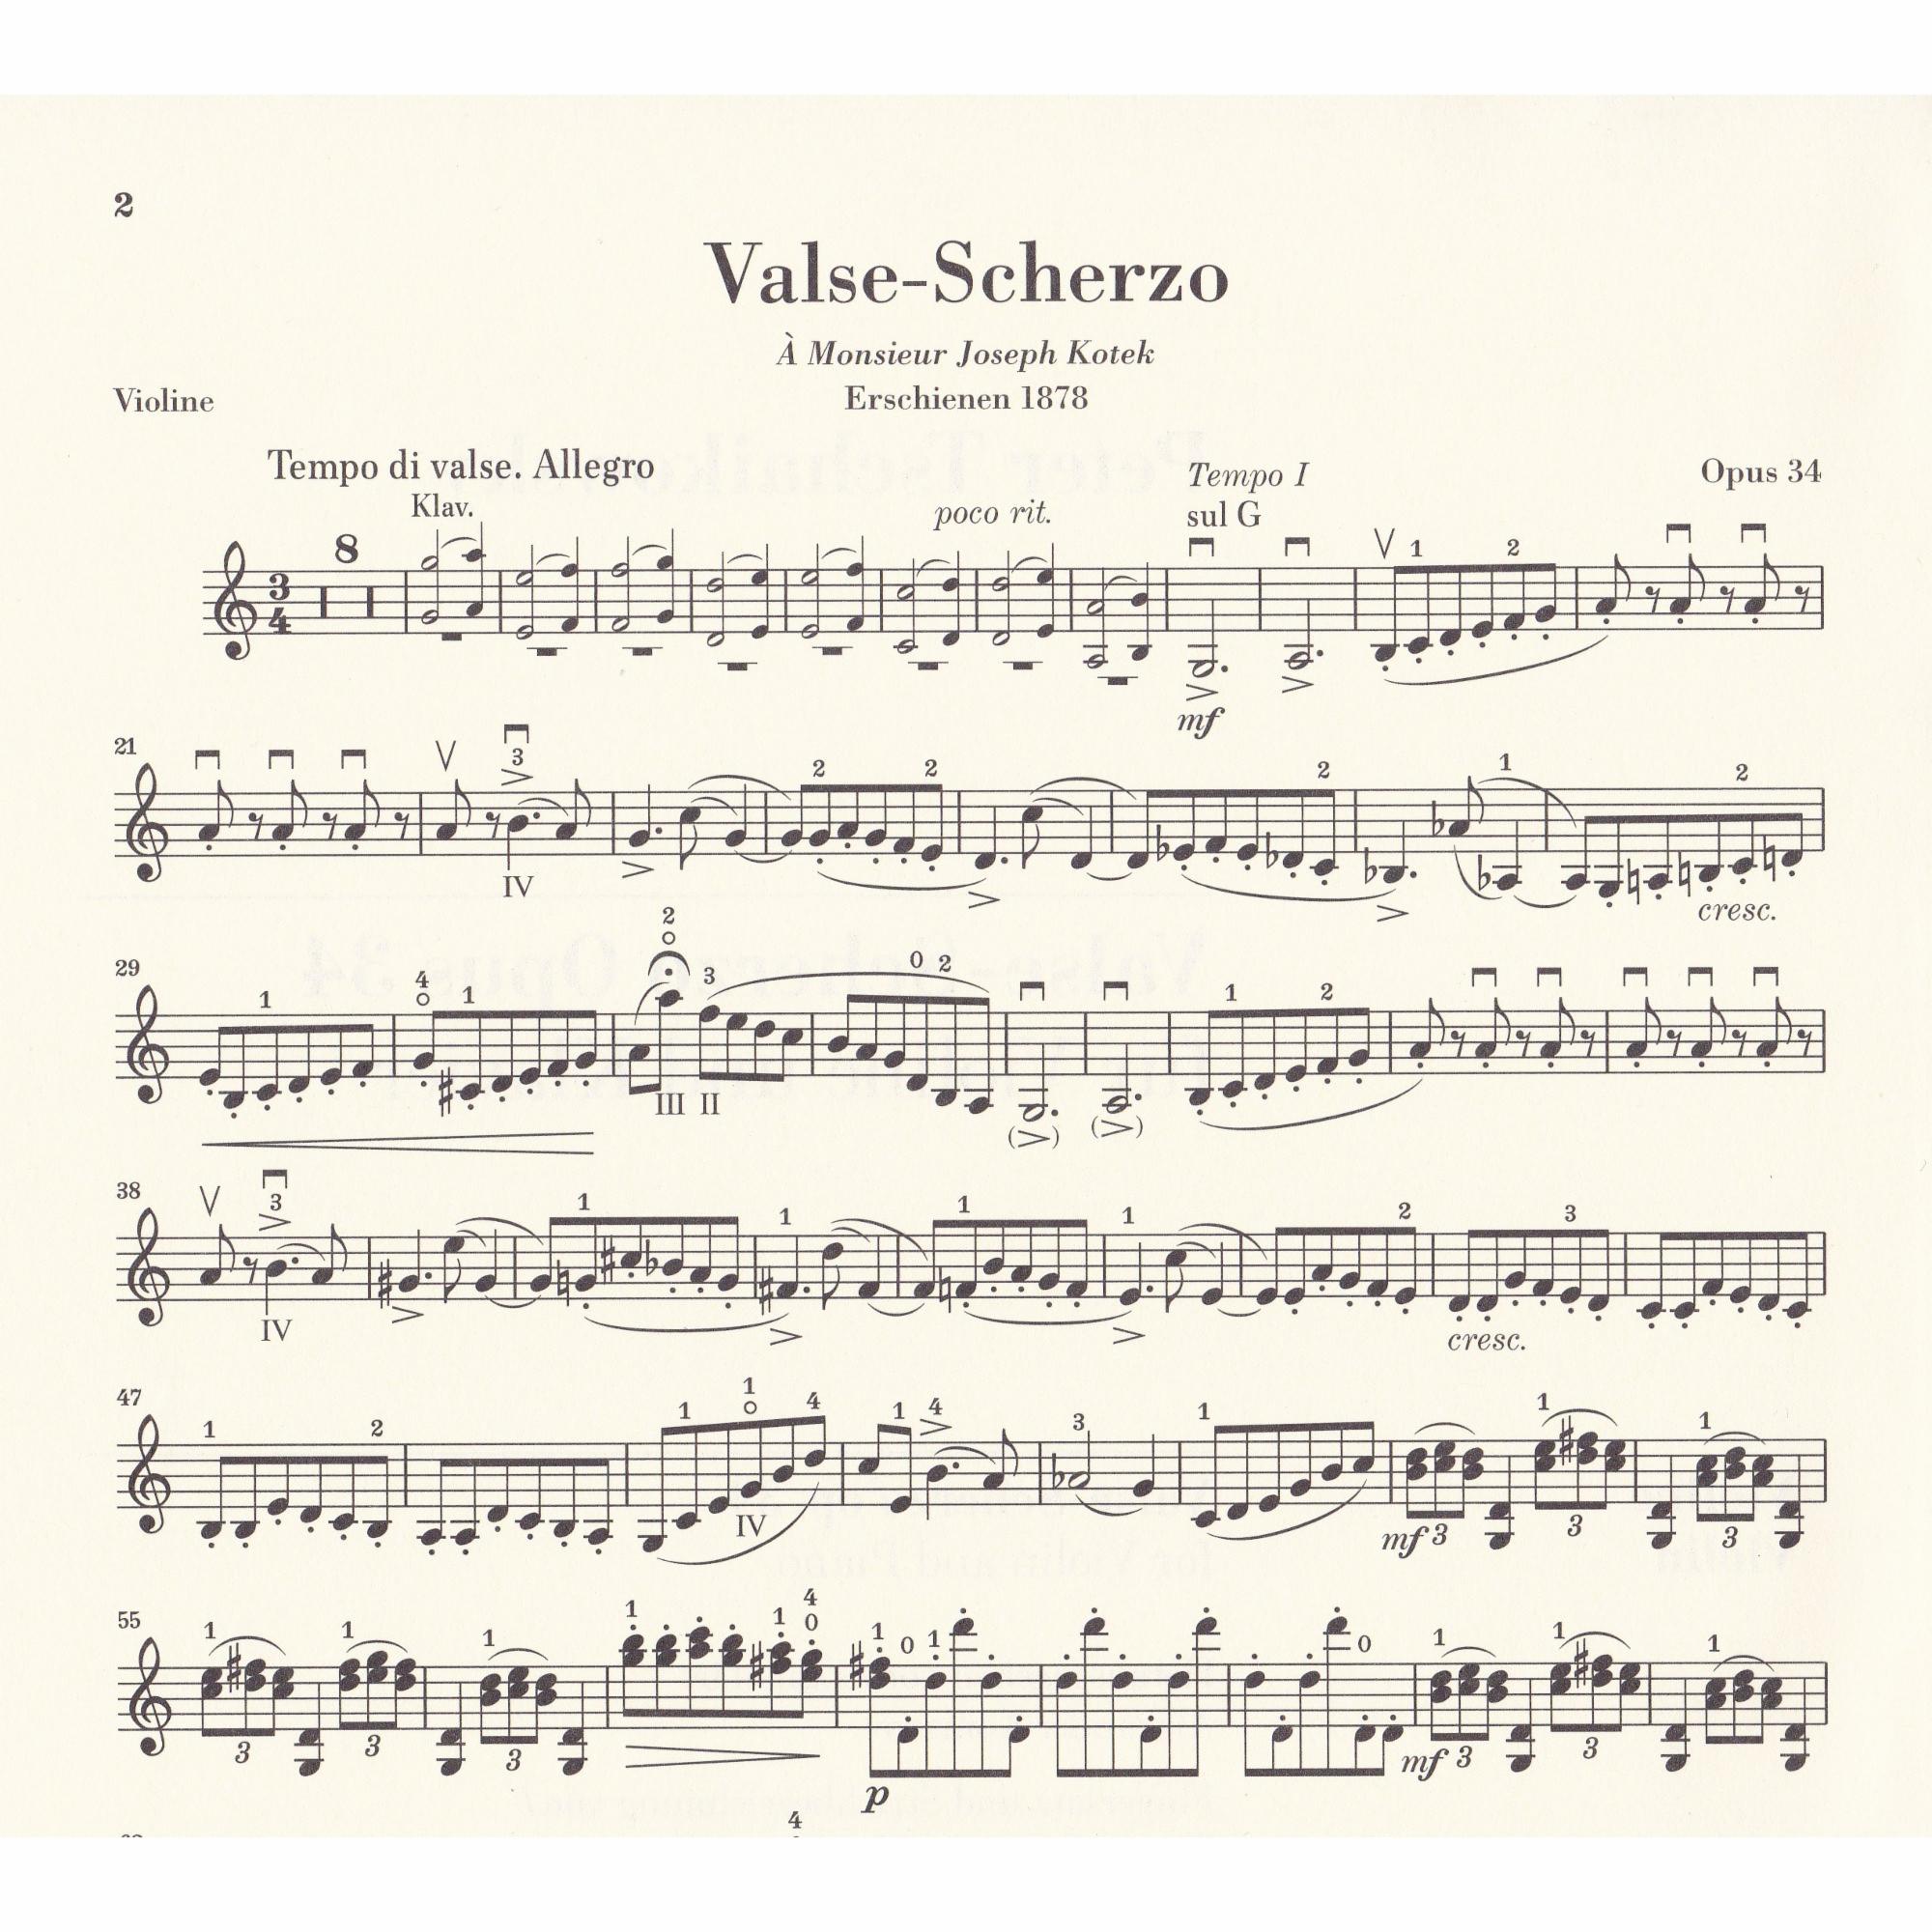 Valse-Scherzo in C Major for Violin and Piano, Op. 34